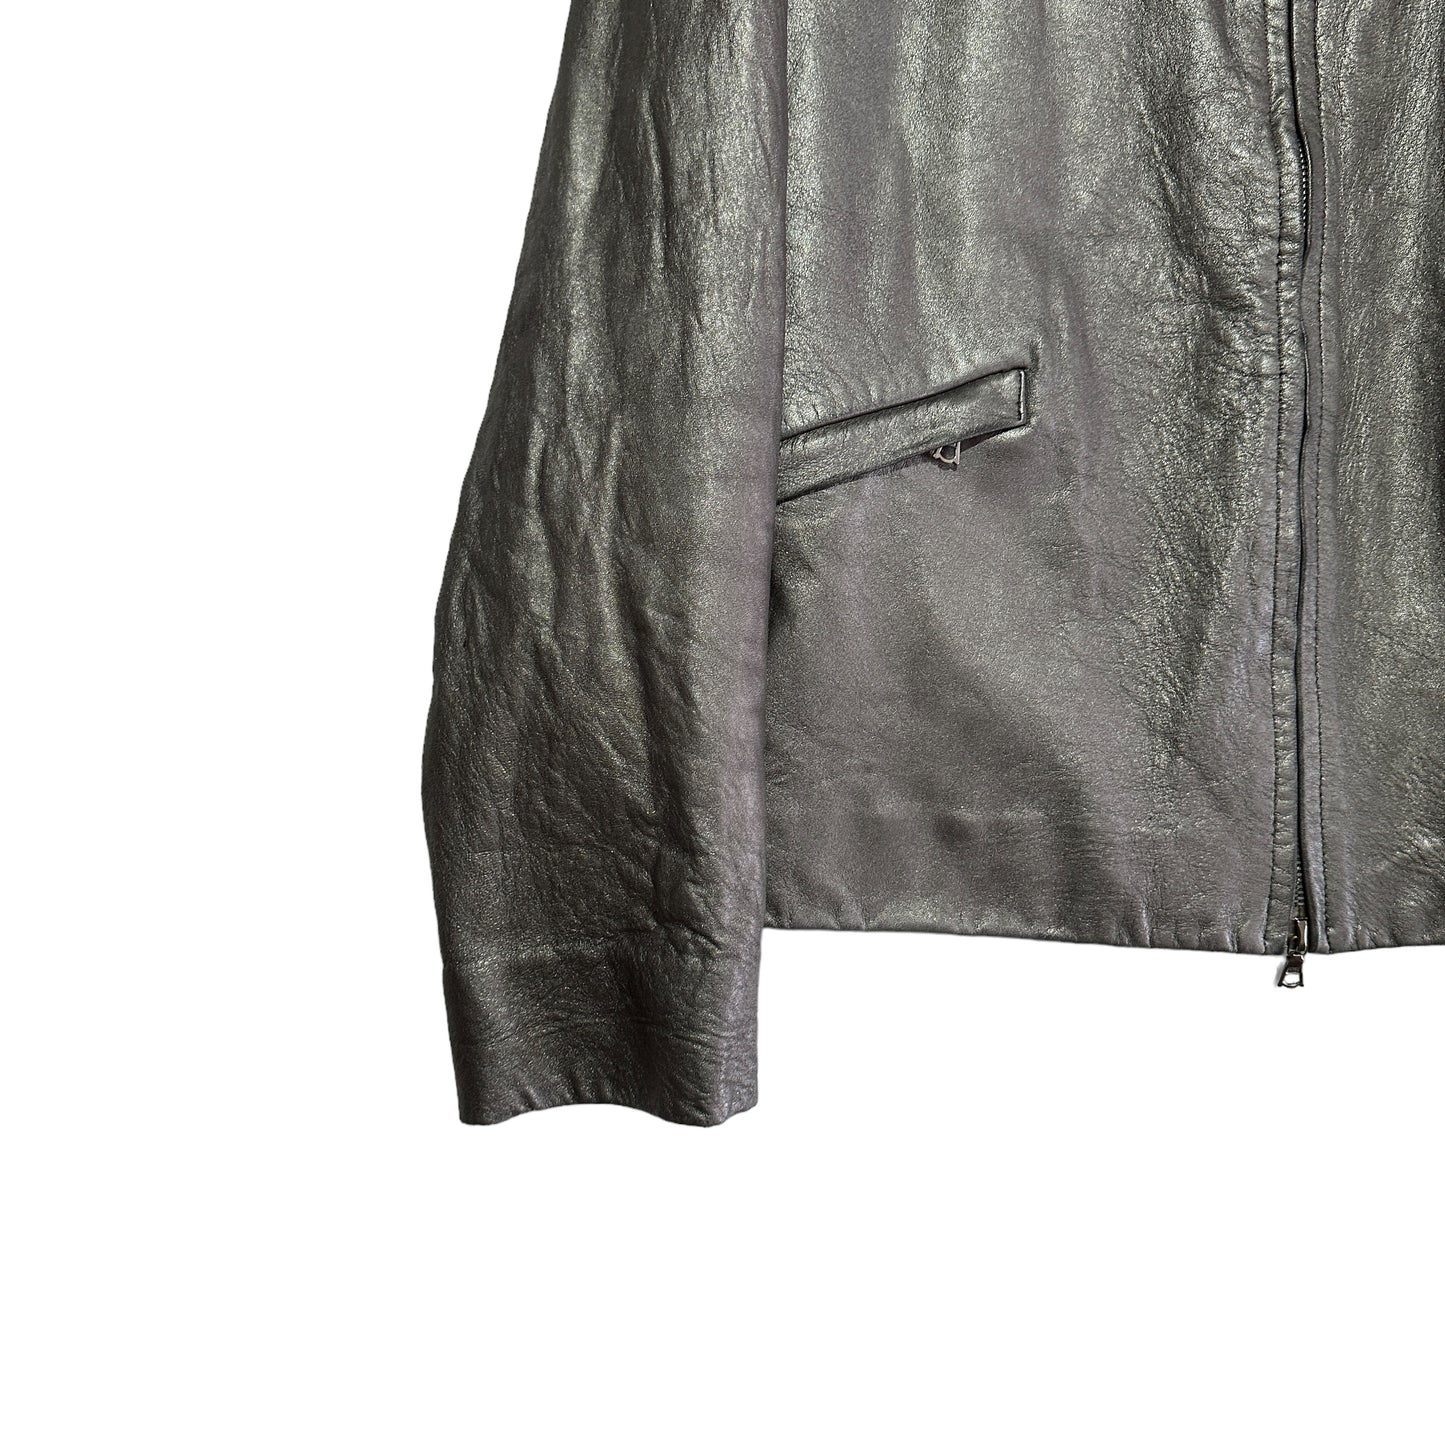 F/W 1999 Miu Miu Leather Jacket (54)